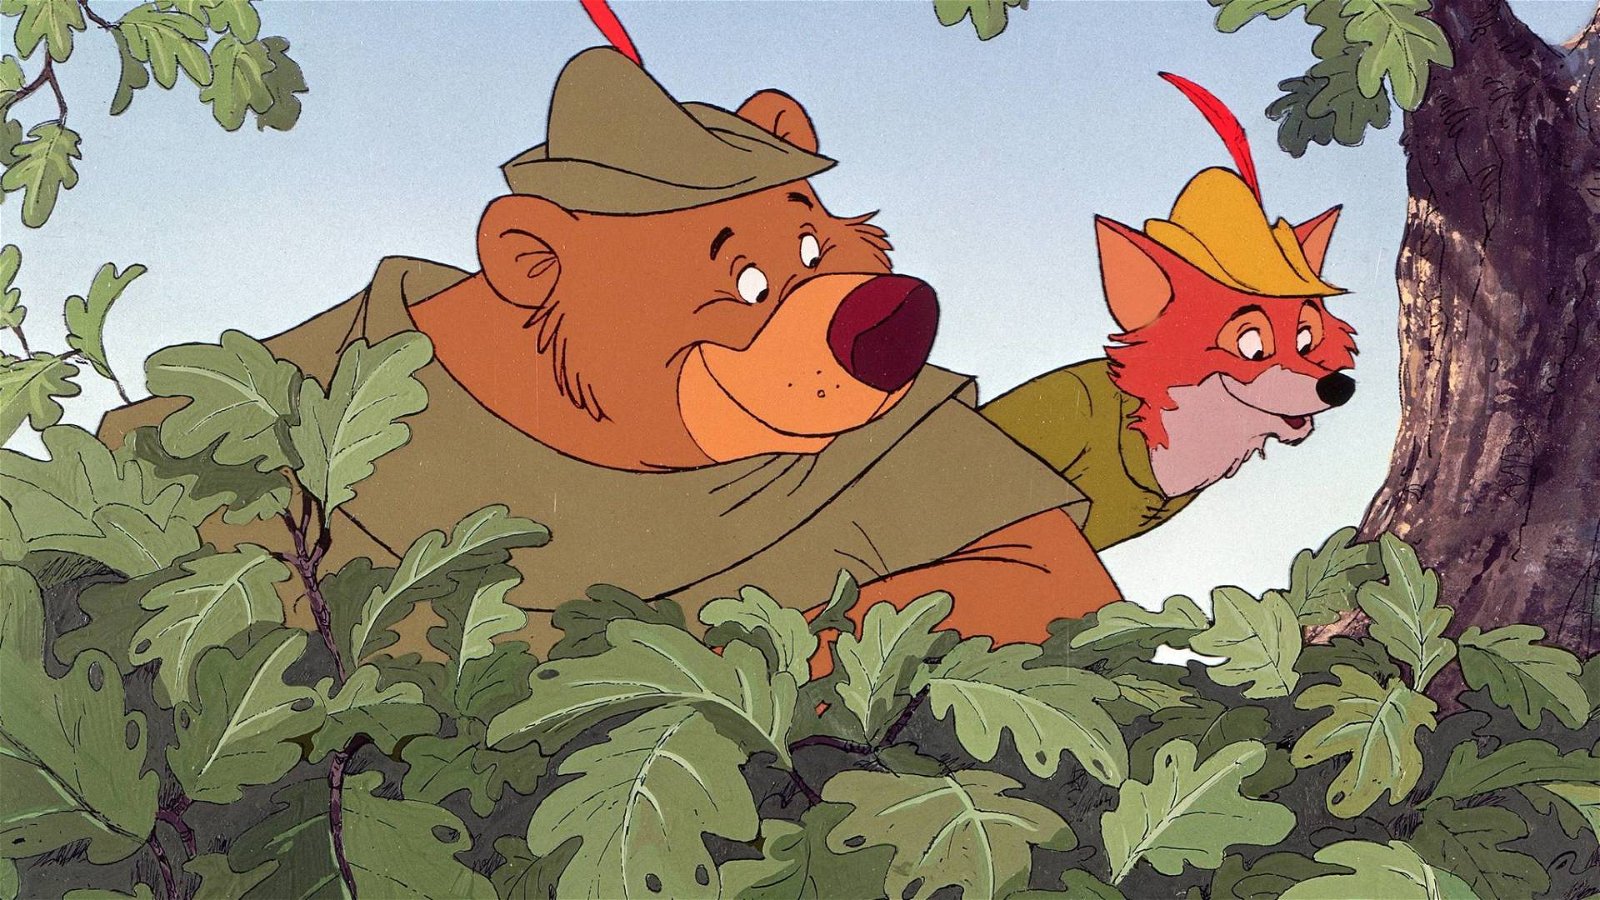 Immagine di Robin Hood e l'eredità di Disney: le curiosità sulla volpe che rubava ai ricchi